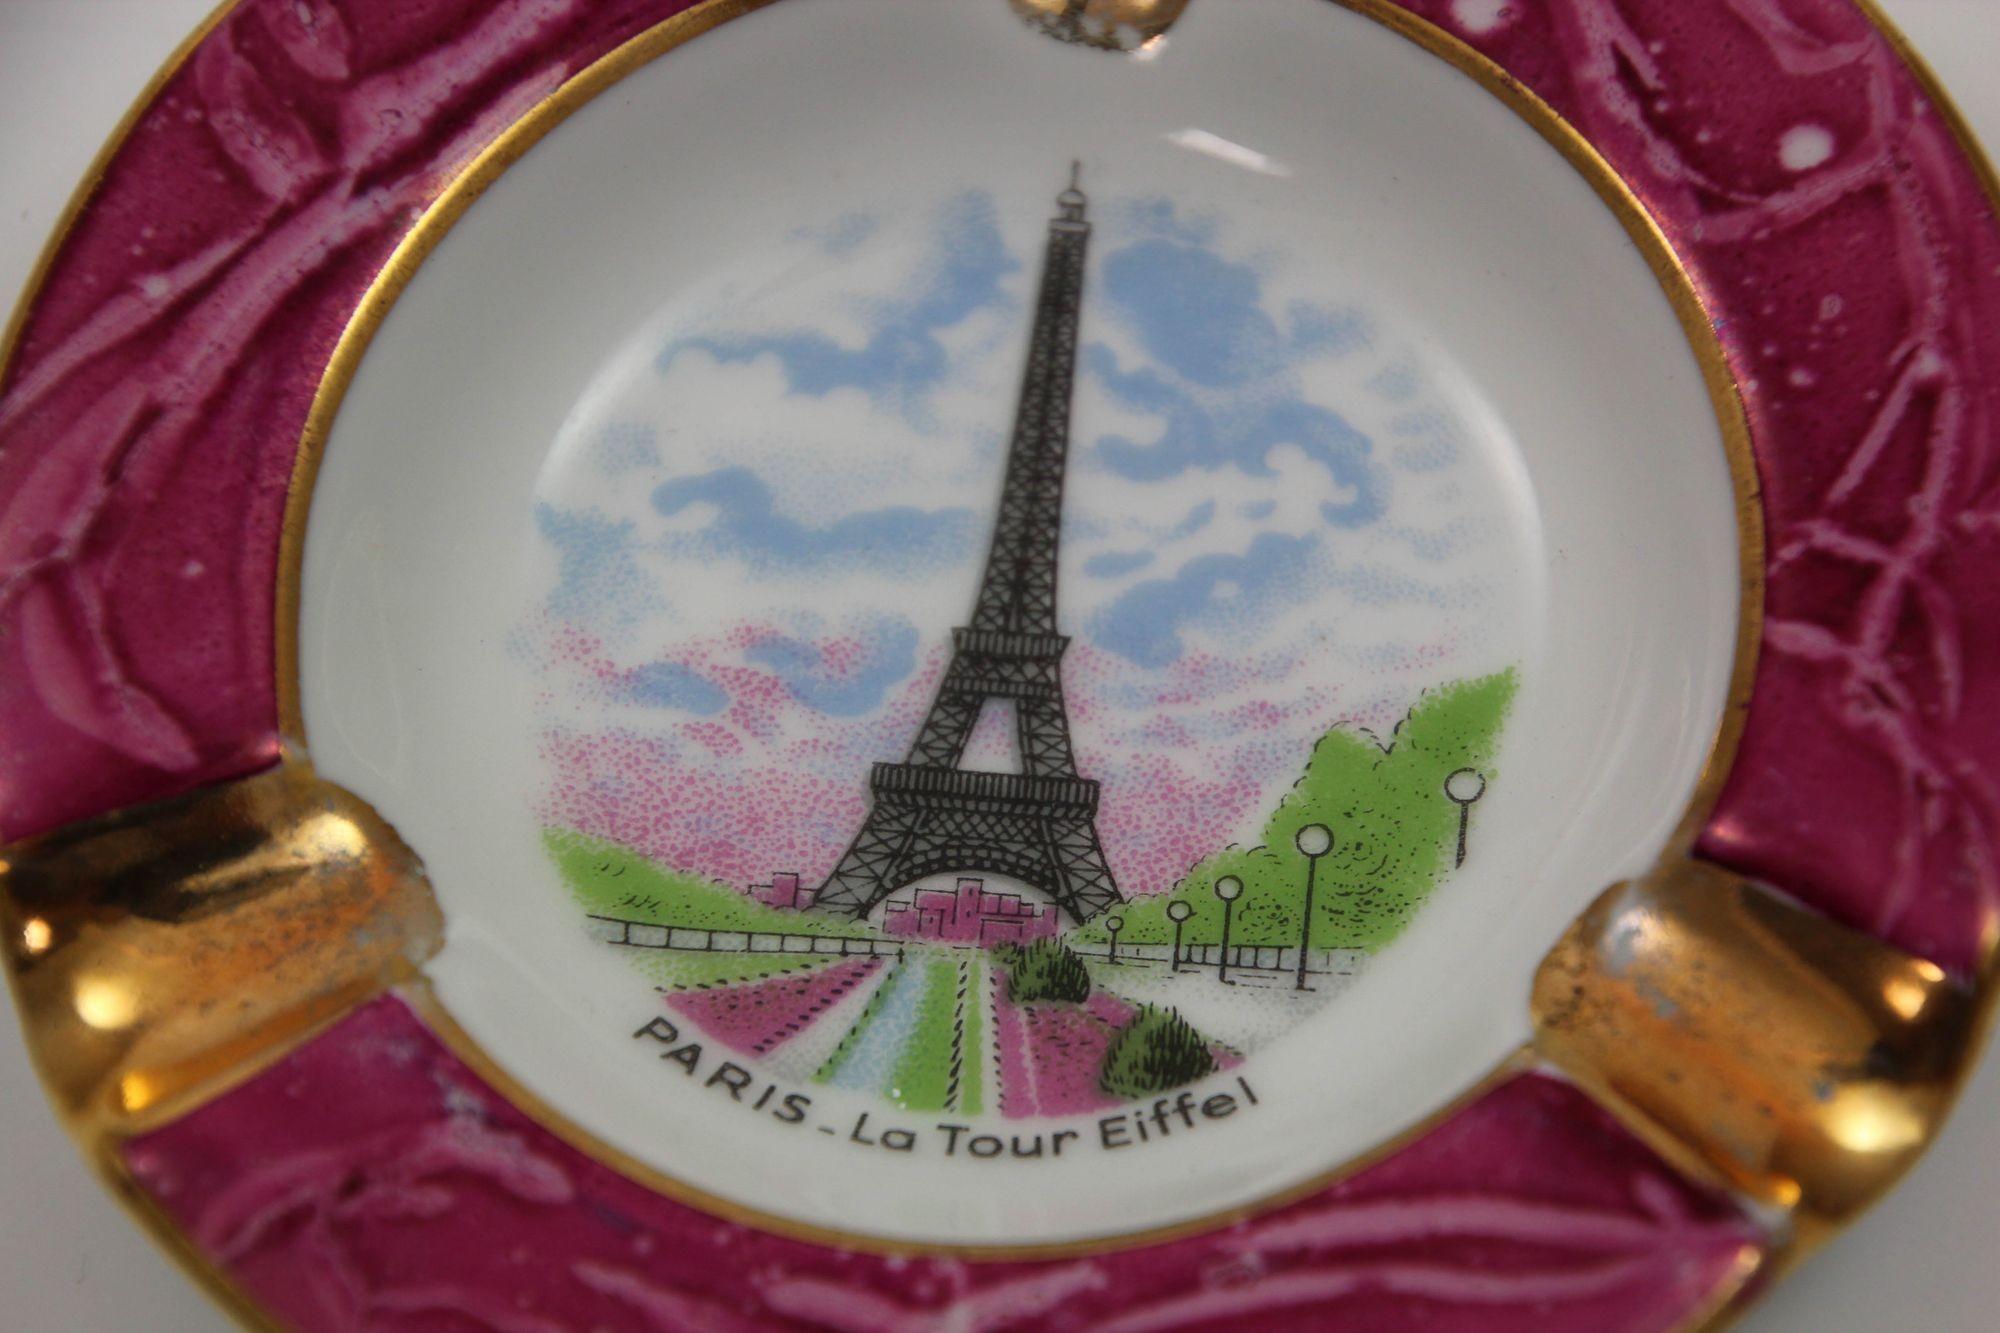 French Limoges Porcelain Dish Ashtray Paris La Tour Eiffel Hand-Painted France 1960s For Sale